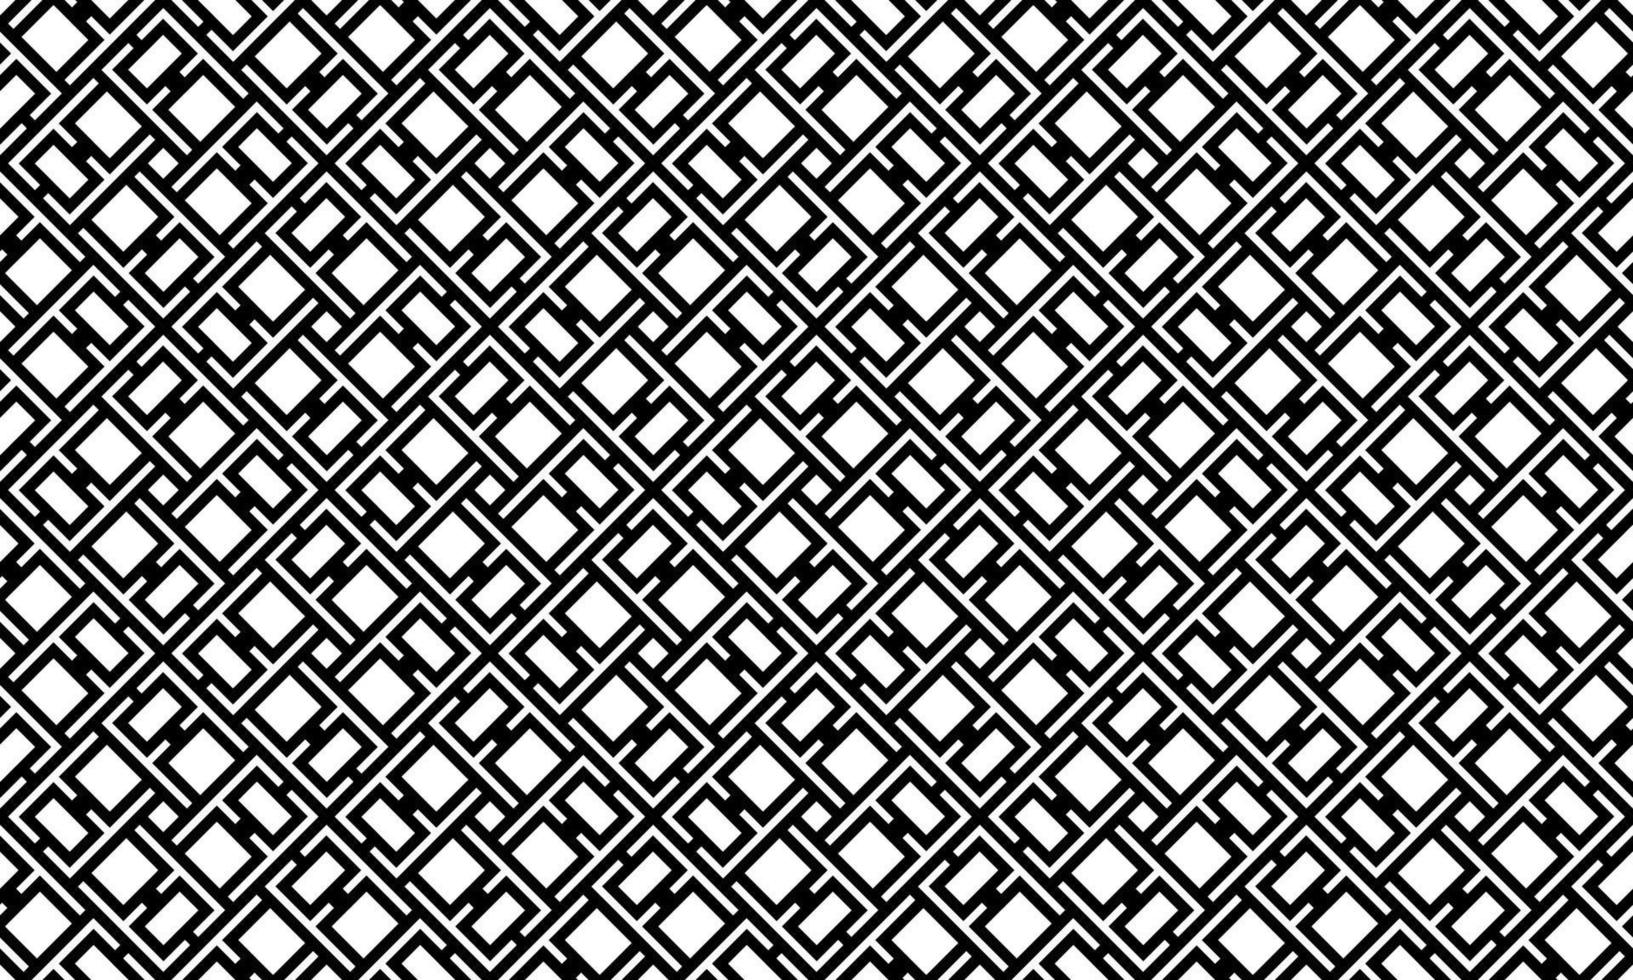 abstrakte geometrische Linien Hintergrundmuster vektor